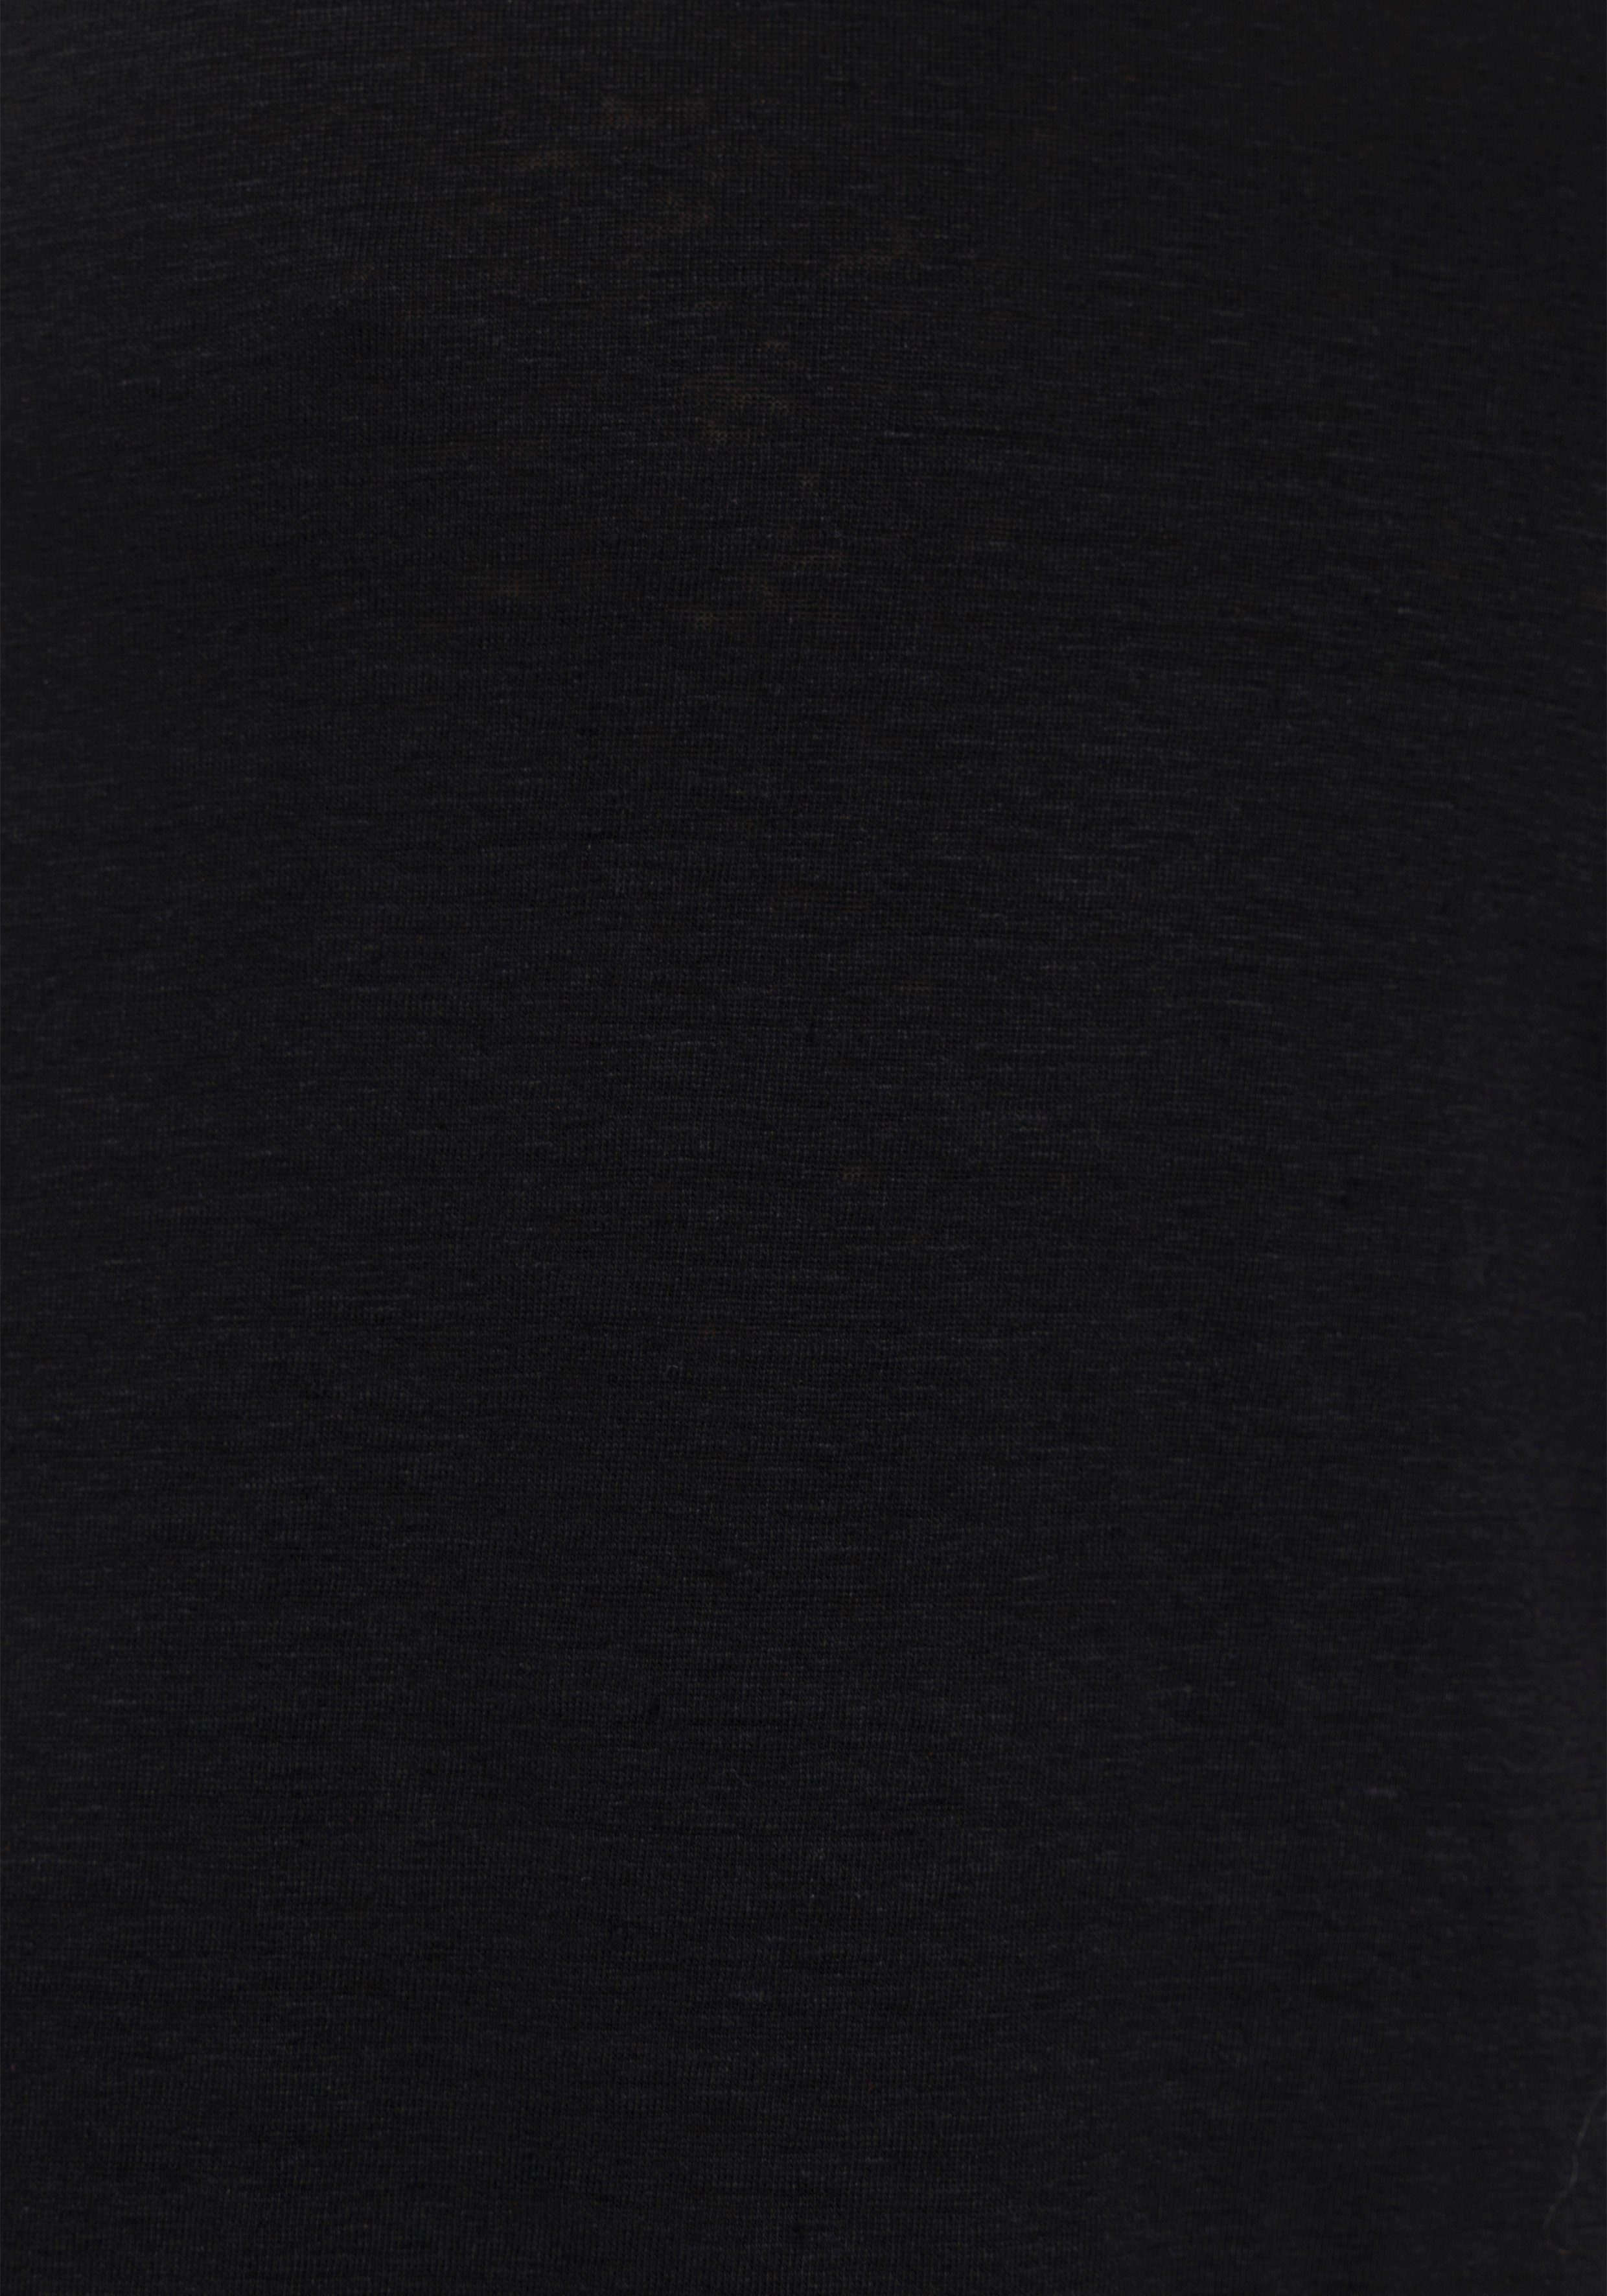 Leinenanteil mit schwarz Level T-Shirt hohem OLYMP body Five fit